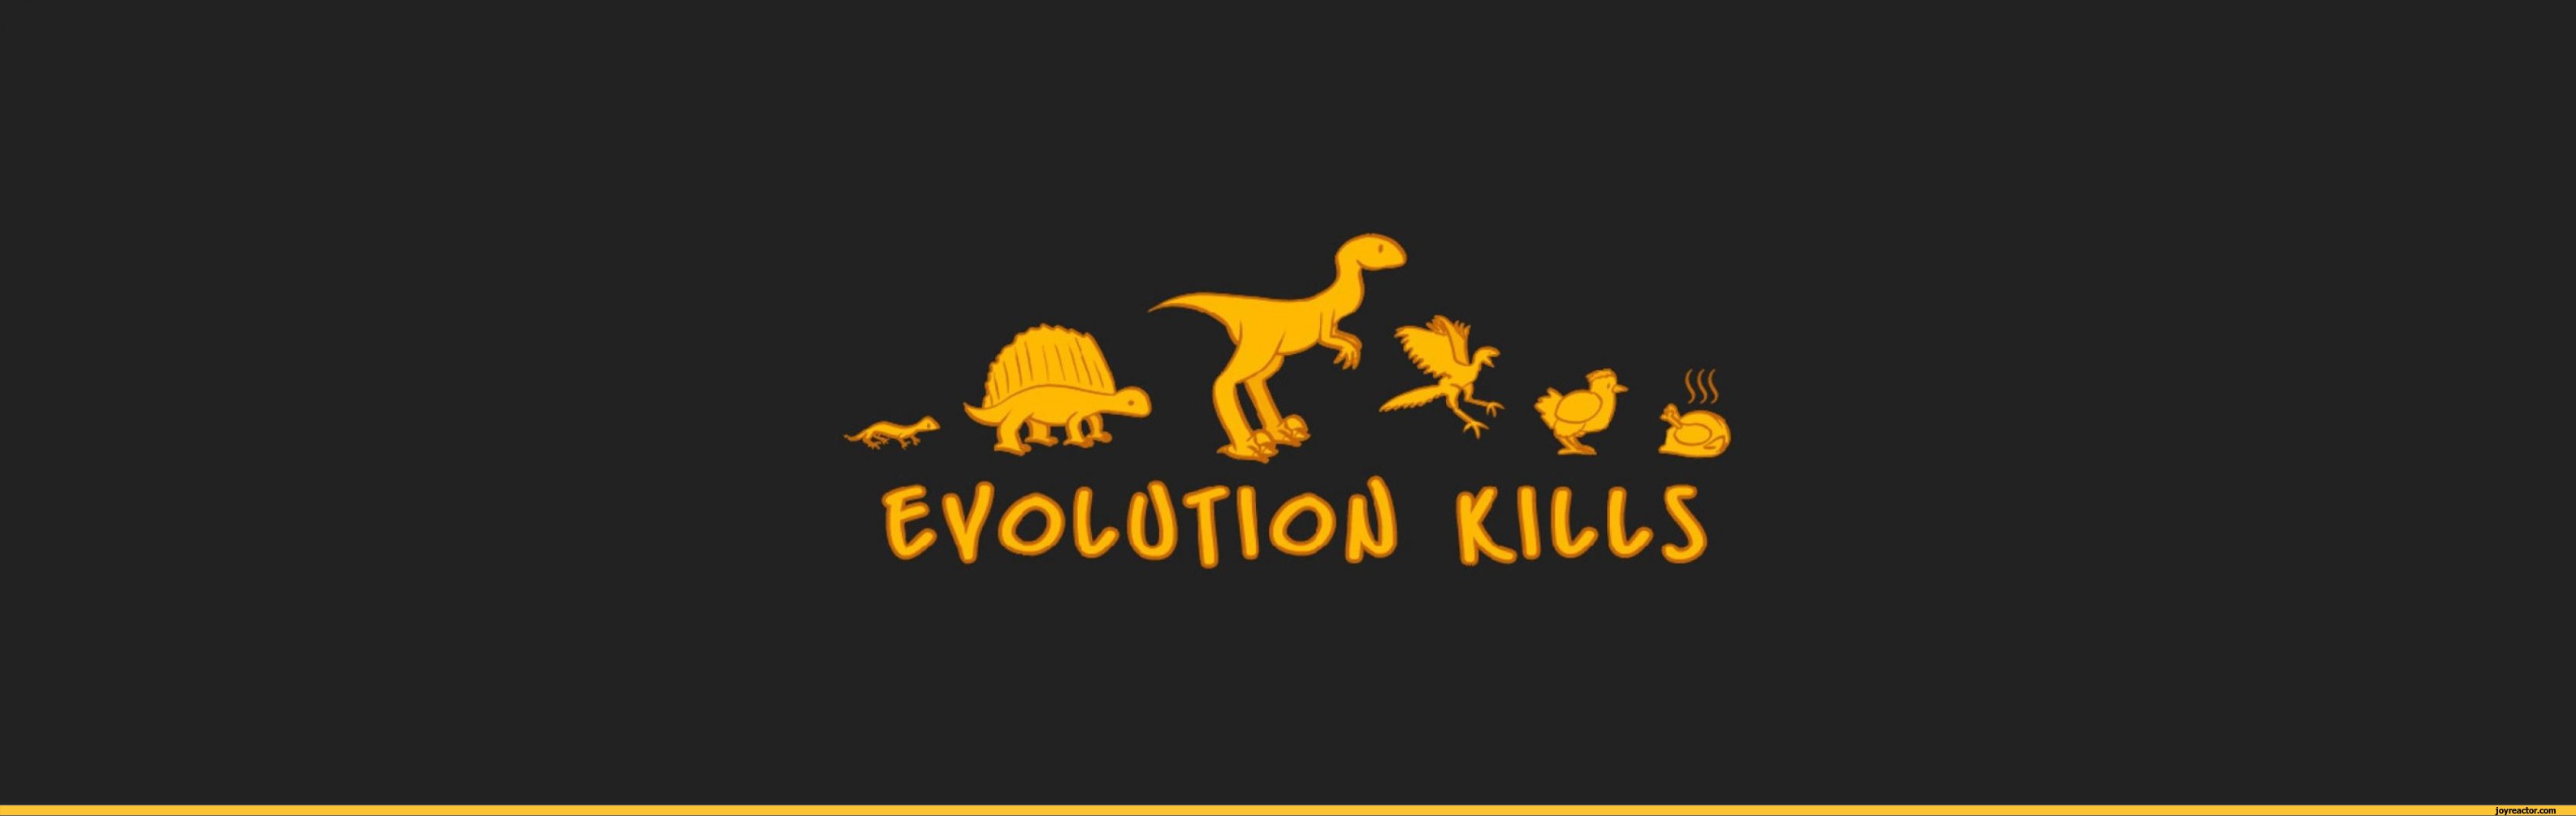 evolution-dinosaur-chicken-death-668916.jpeg